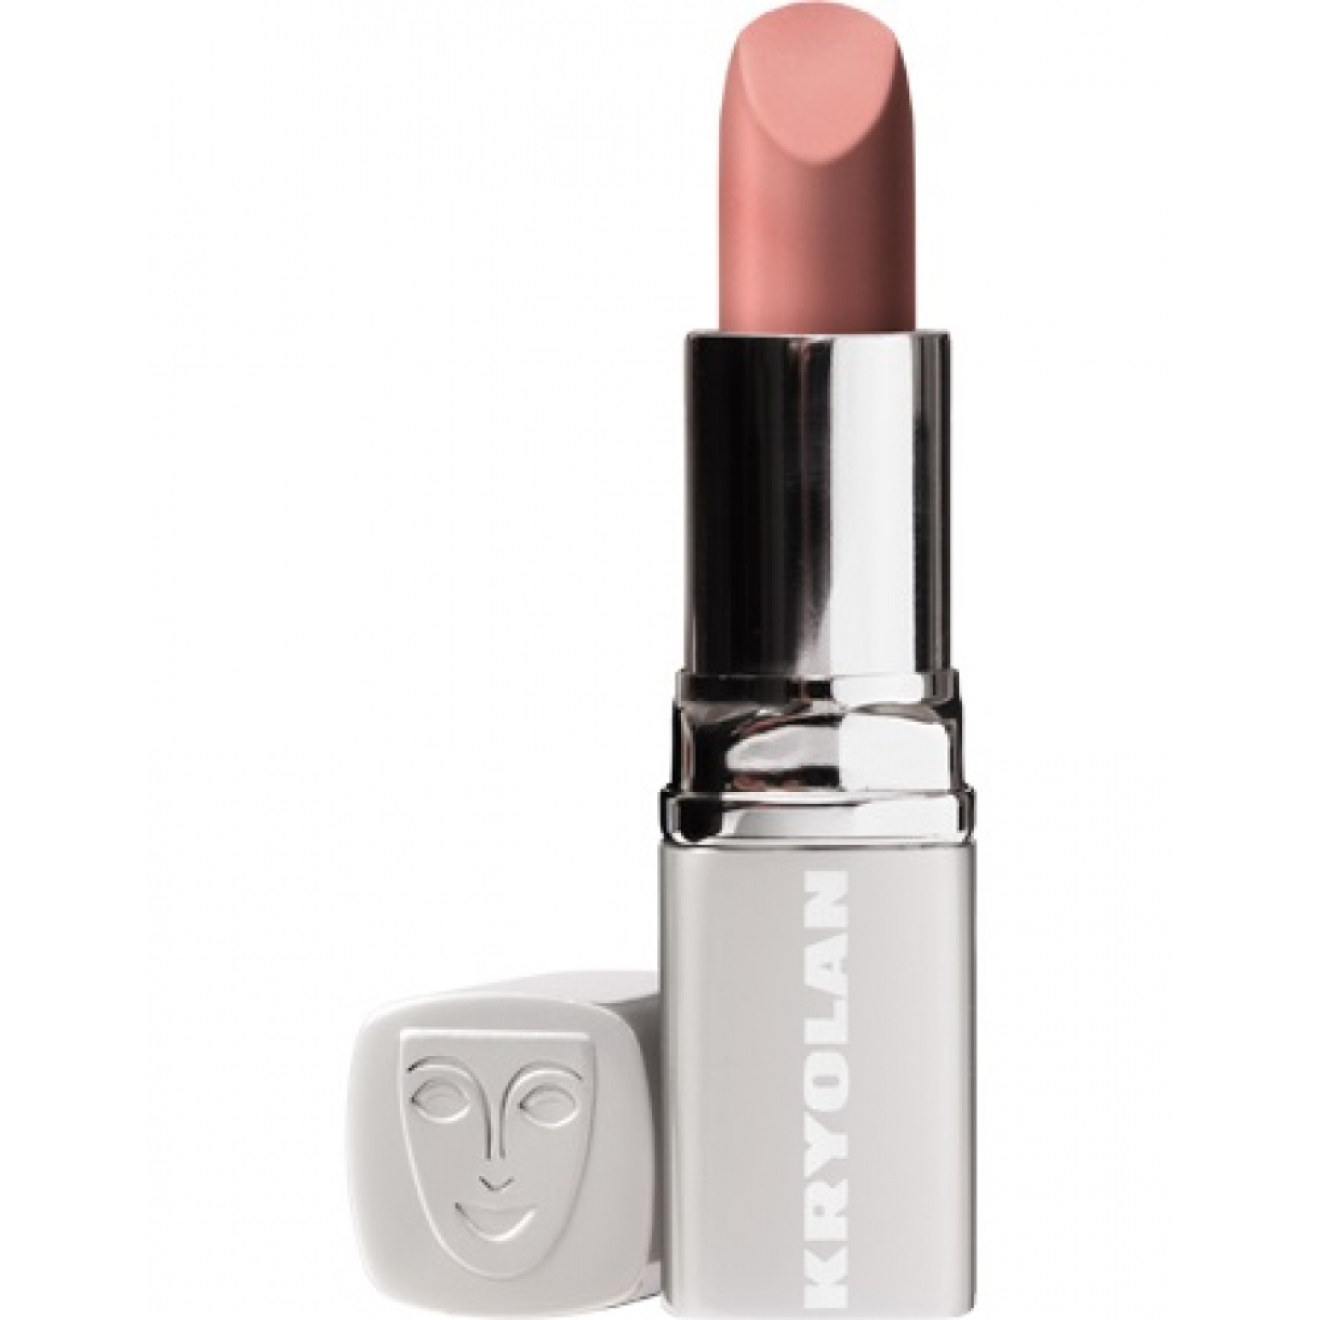 Kryolan Lipstick Pearl in Kunststoffhülse 4g